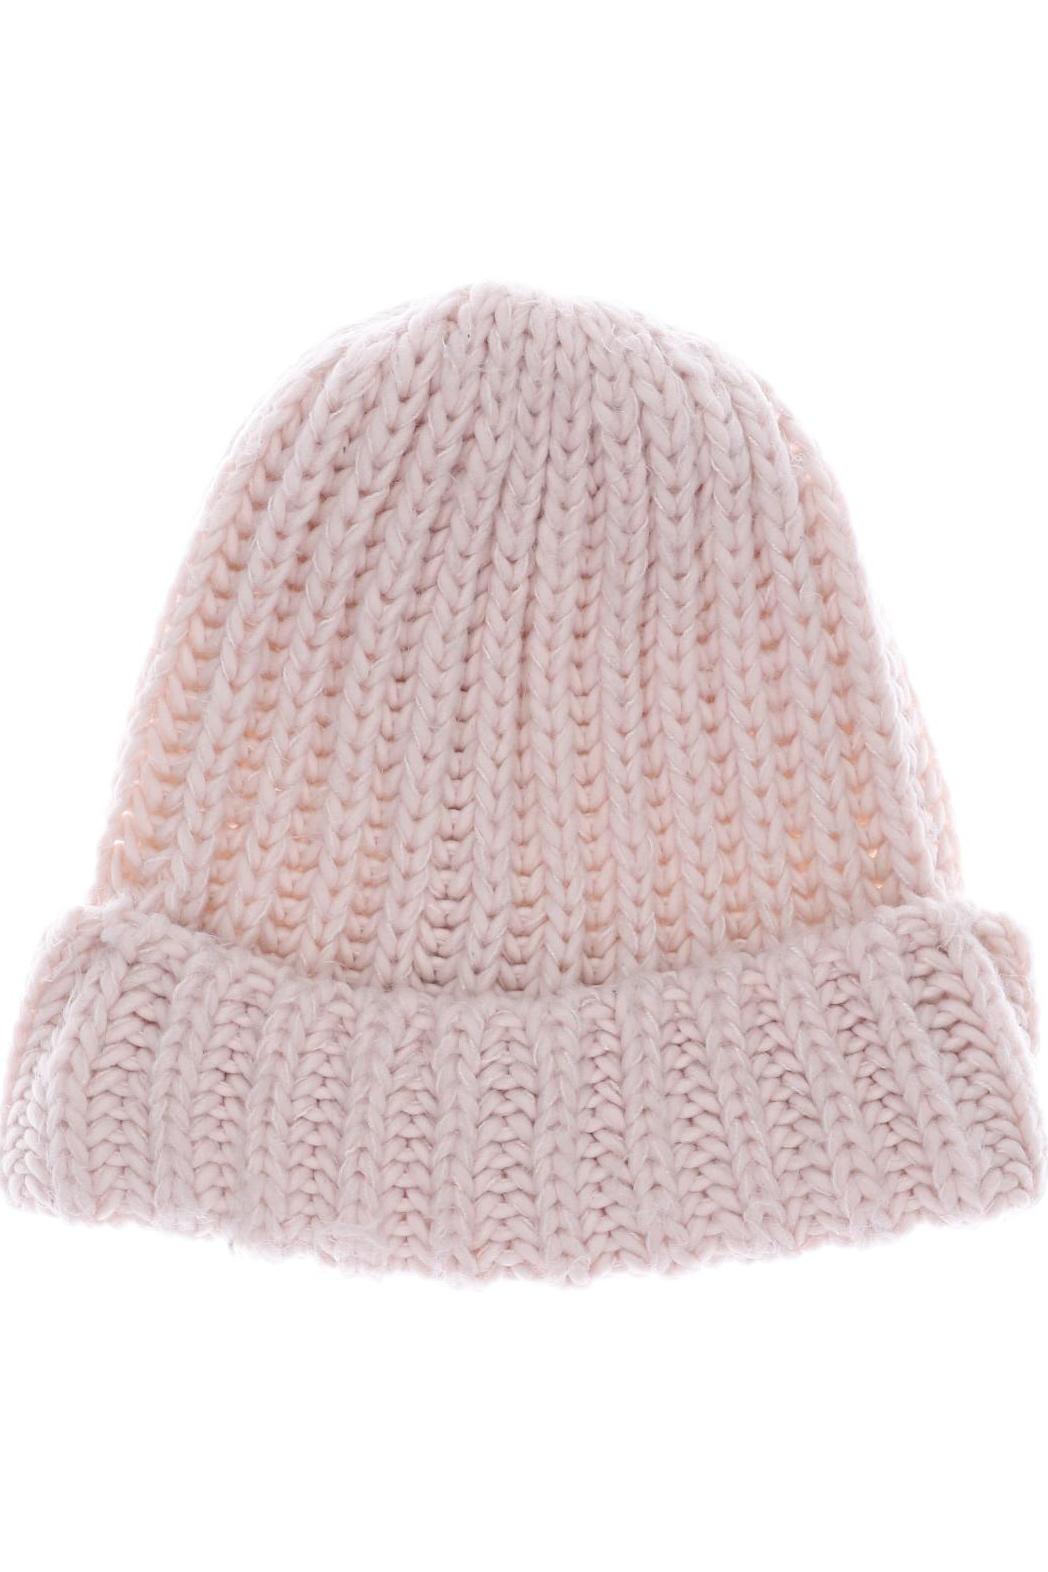 ZARA Damen Hut/Mütze, pink von ZARA